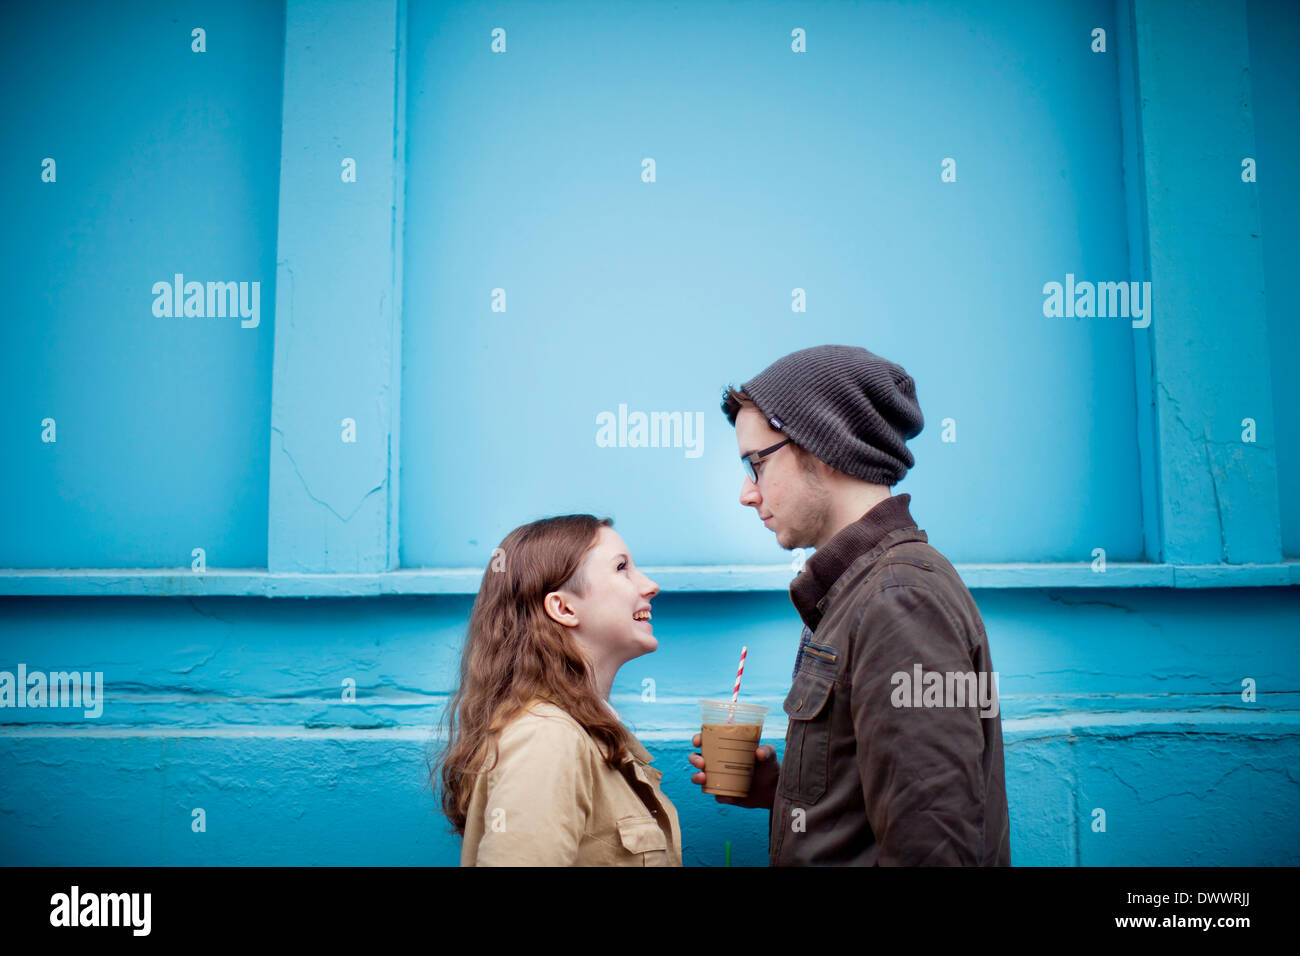 Estados Unidos, Massachusetts, pareja joven cara a cara, pared azul en segundo plano. Foto de stock